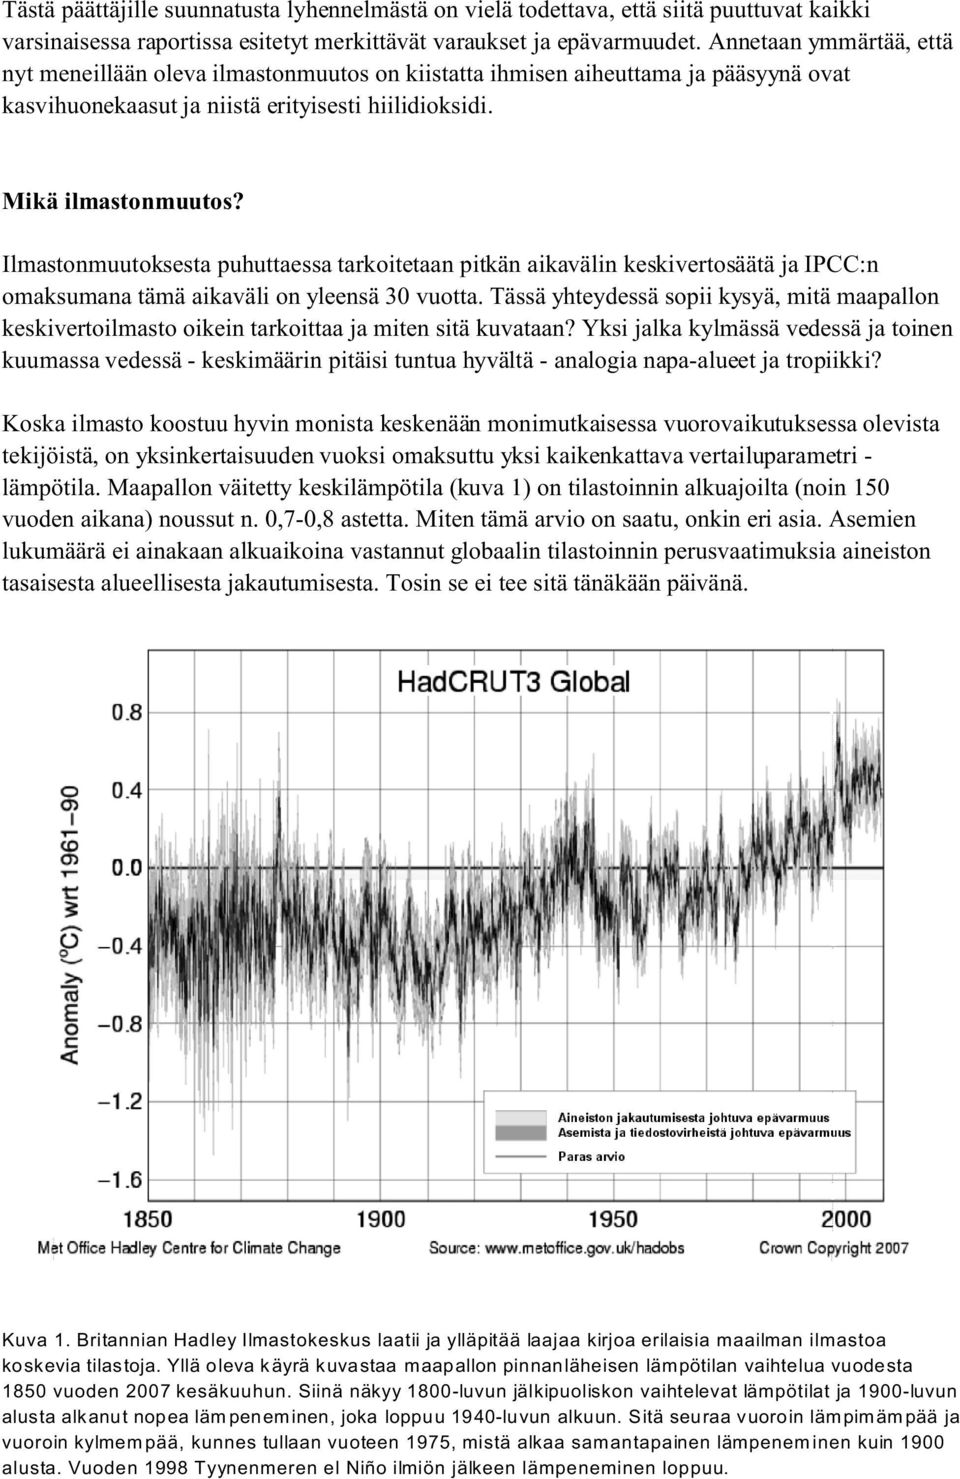 Ilmastonmuutoksesta puhuttaessa tarkoitetaan pitkän aikavälin keskivertosäätä ja IPCC:n omaksumana tämä aikaväli on yleensä 30 vuotta.